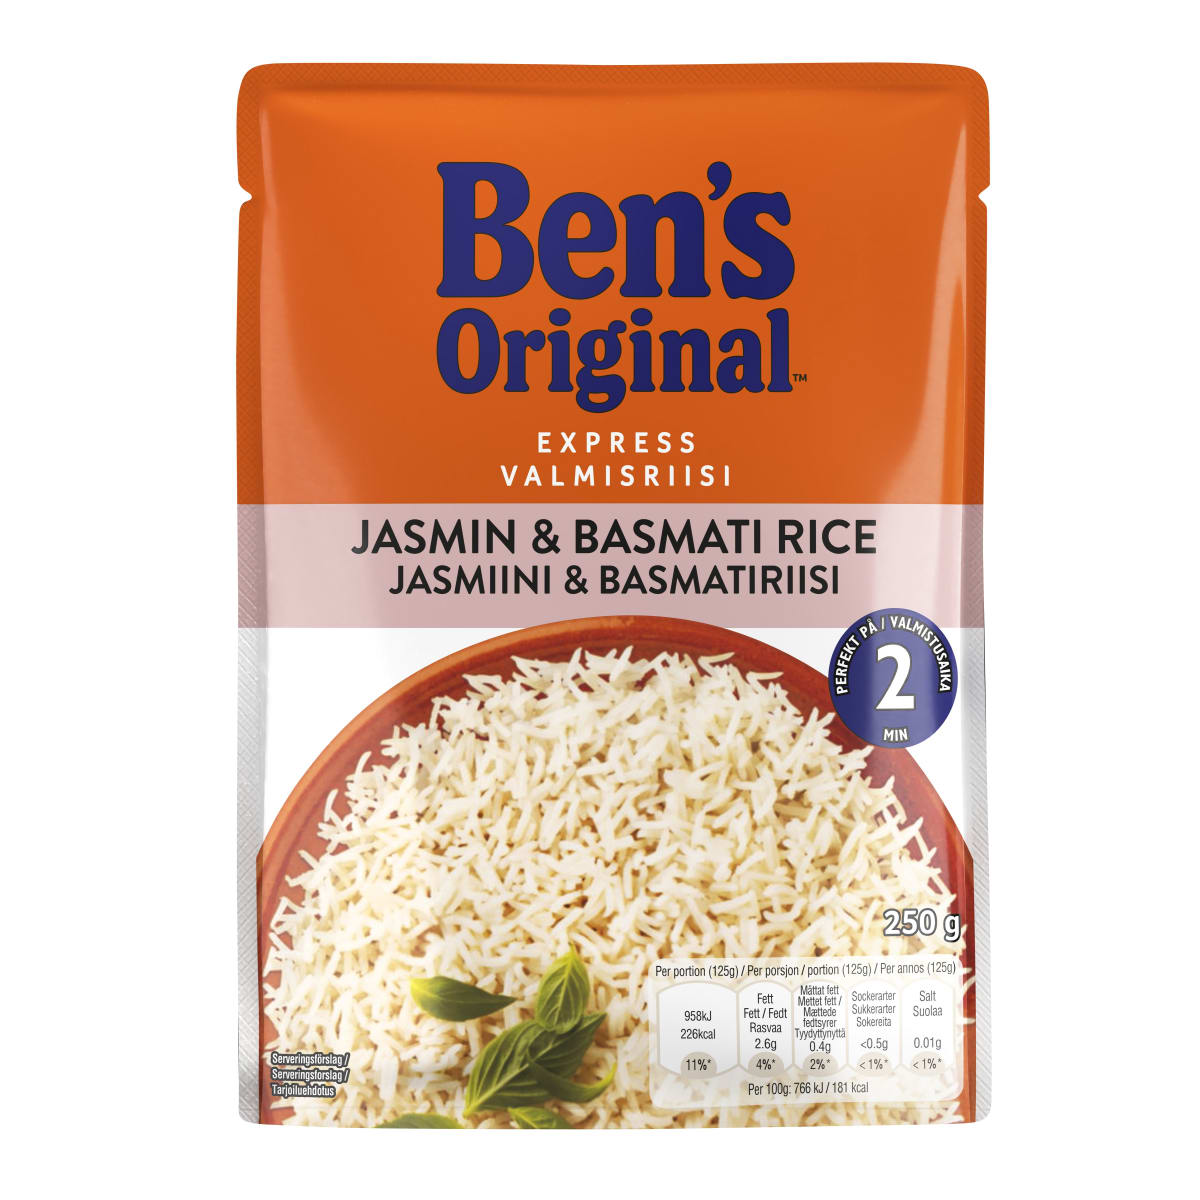 Ben's Original 250g jasmiini&basmati valmisriisi   verkkokauppa